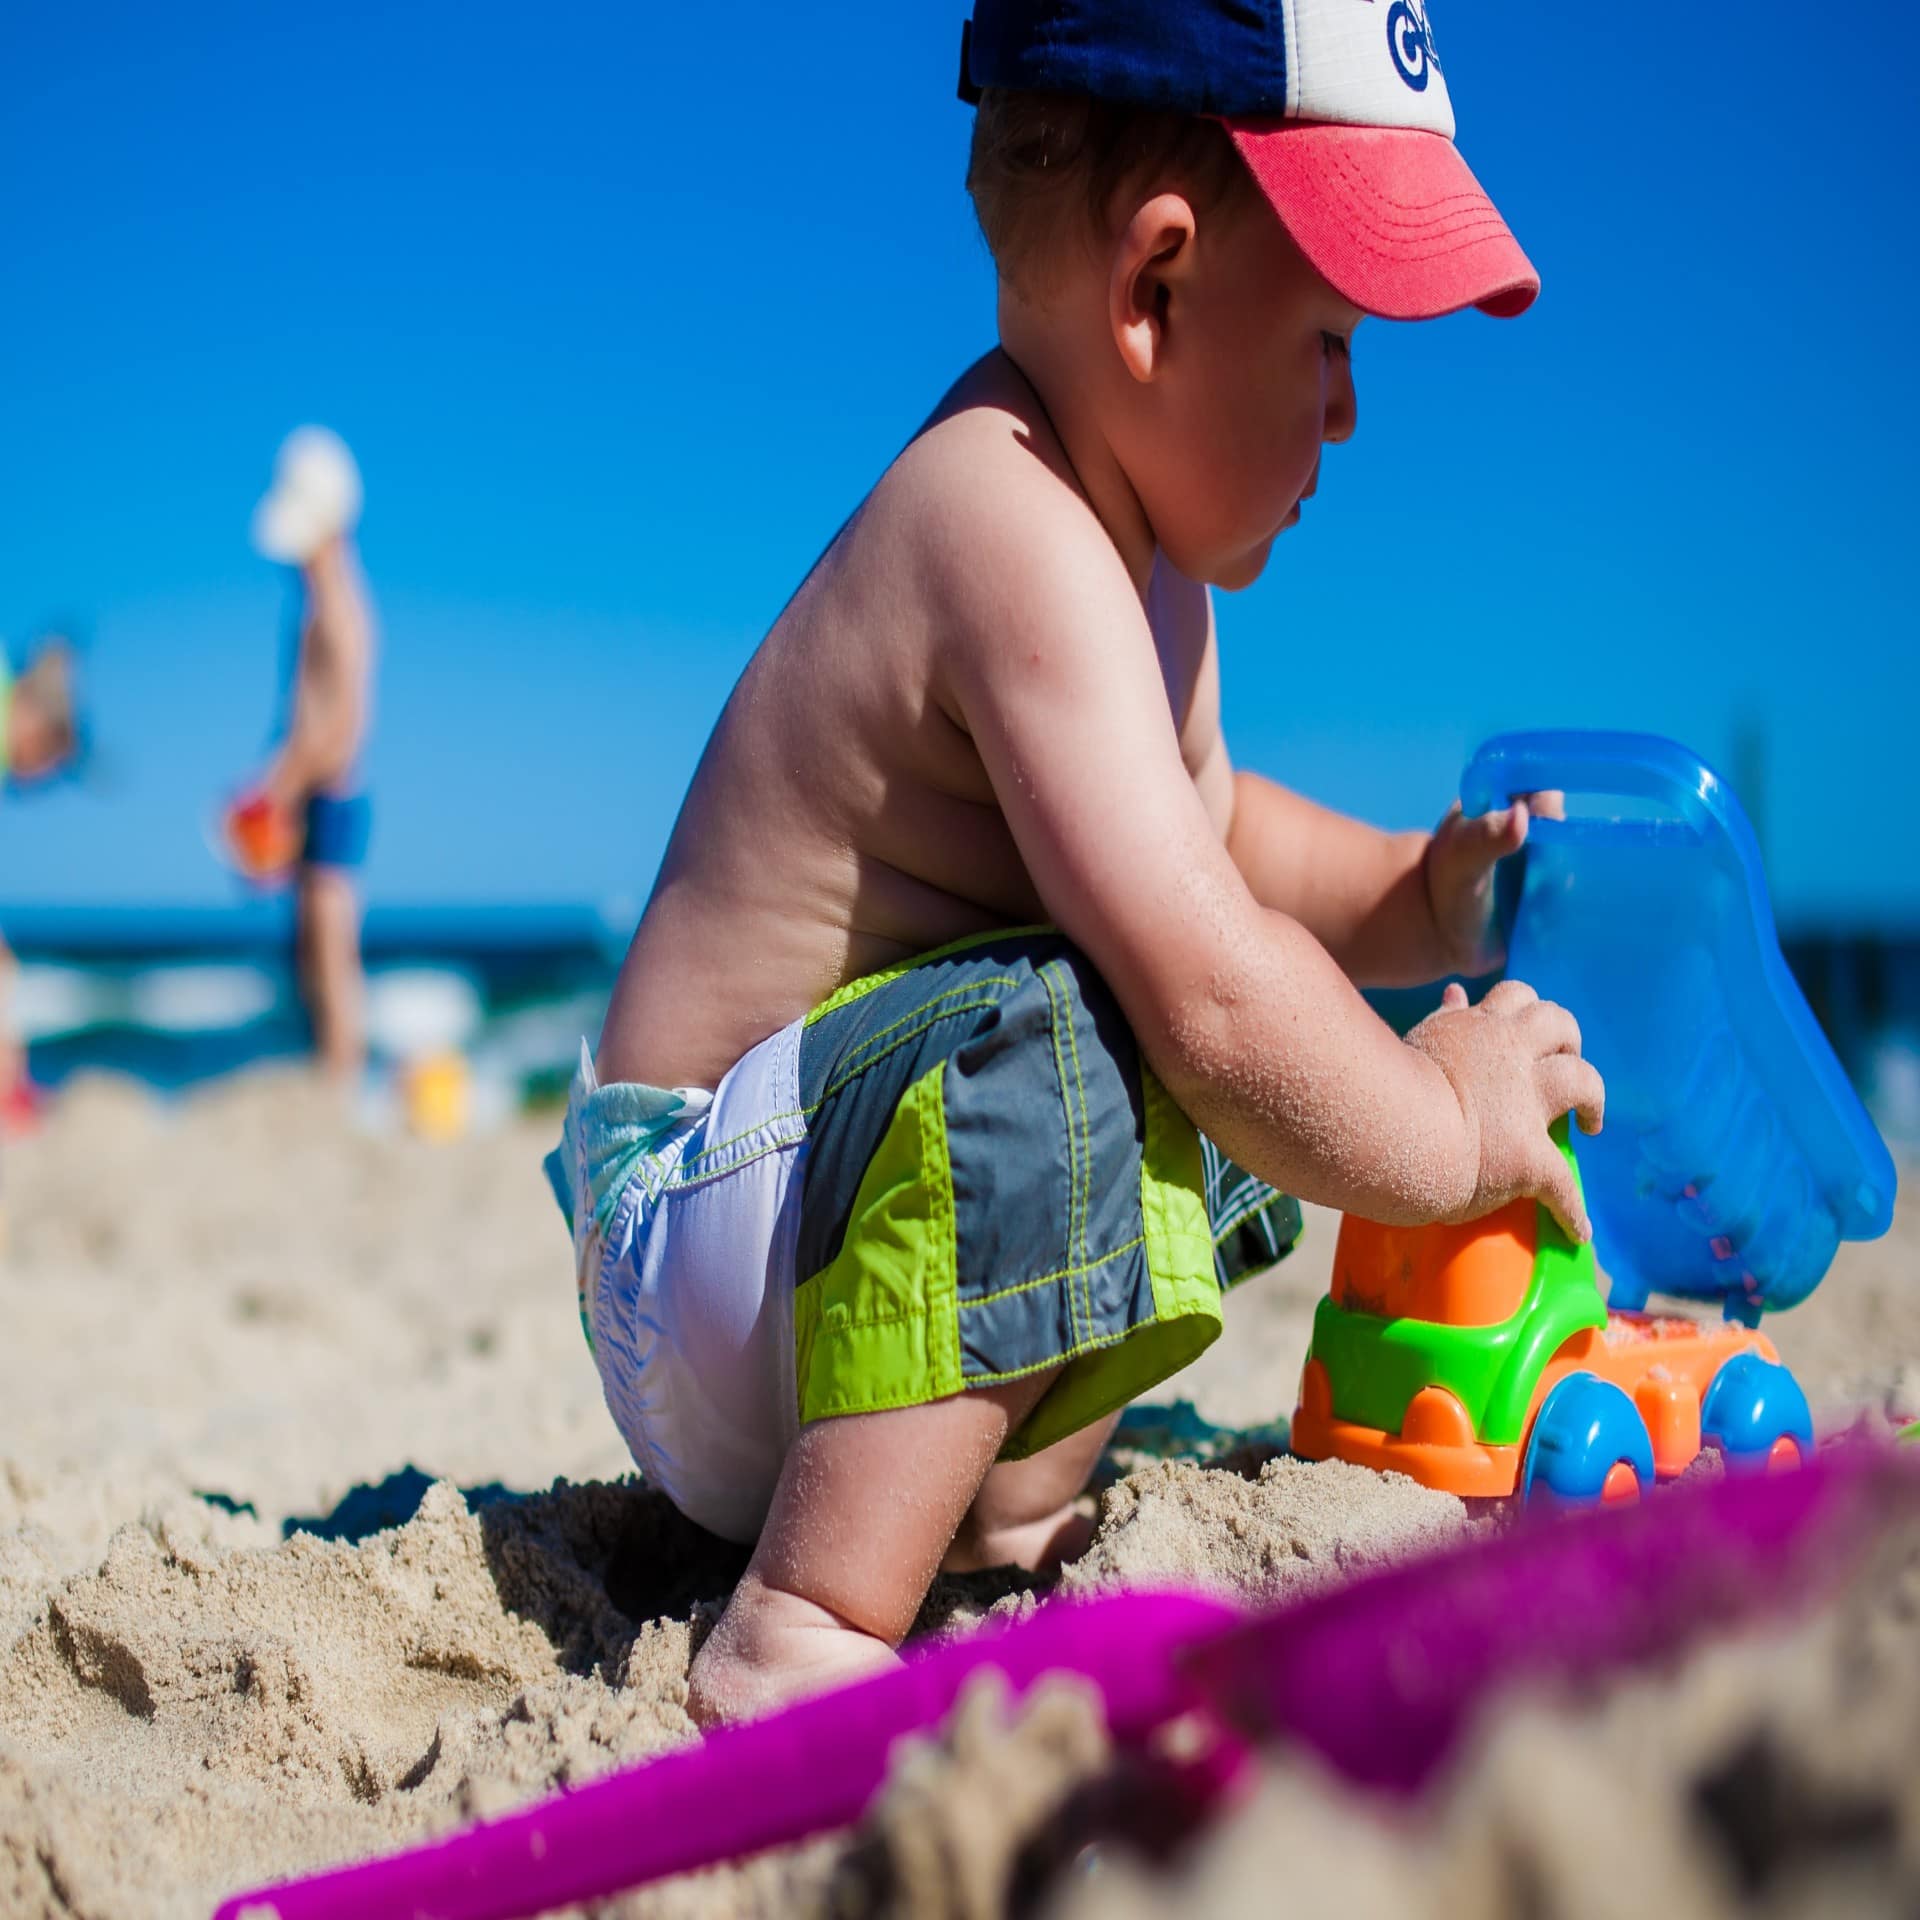 Nahaufnahme: Ein kleiner Junge mit Badehose und Mütze spielt mit einem kleinen Lastwagen am Strand. Die Sonne scheint. 